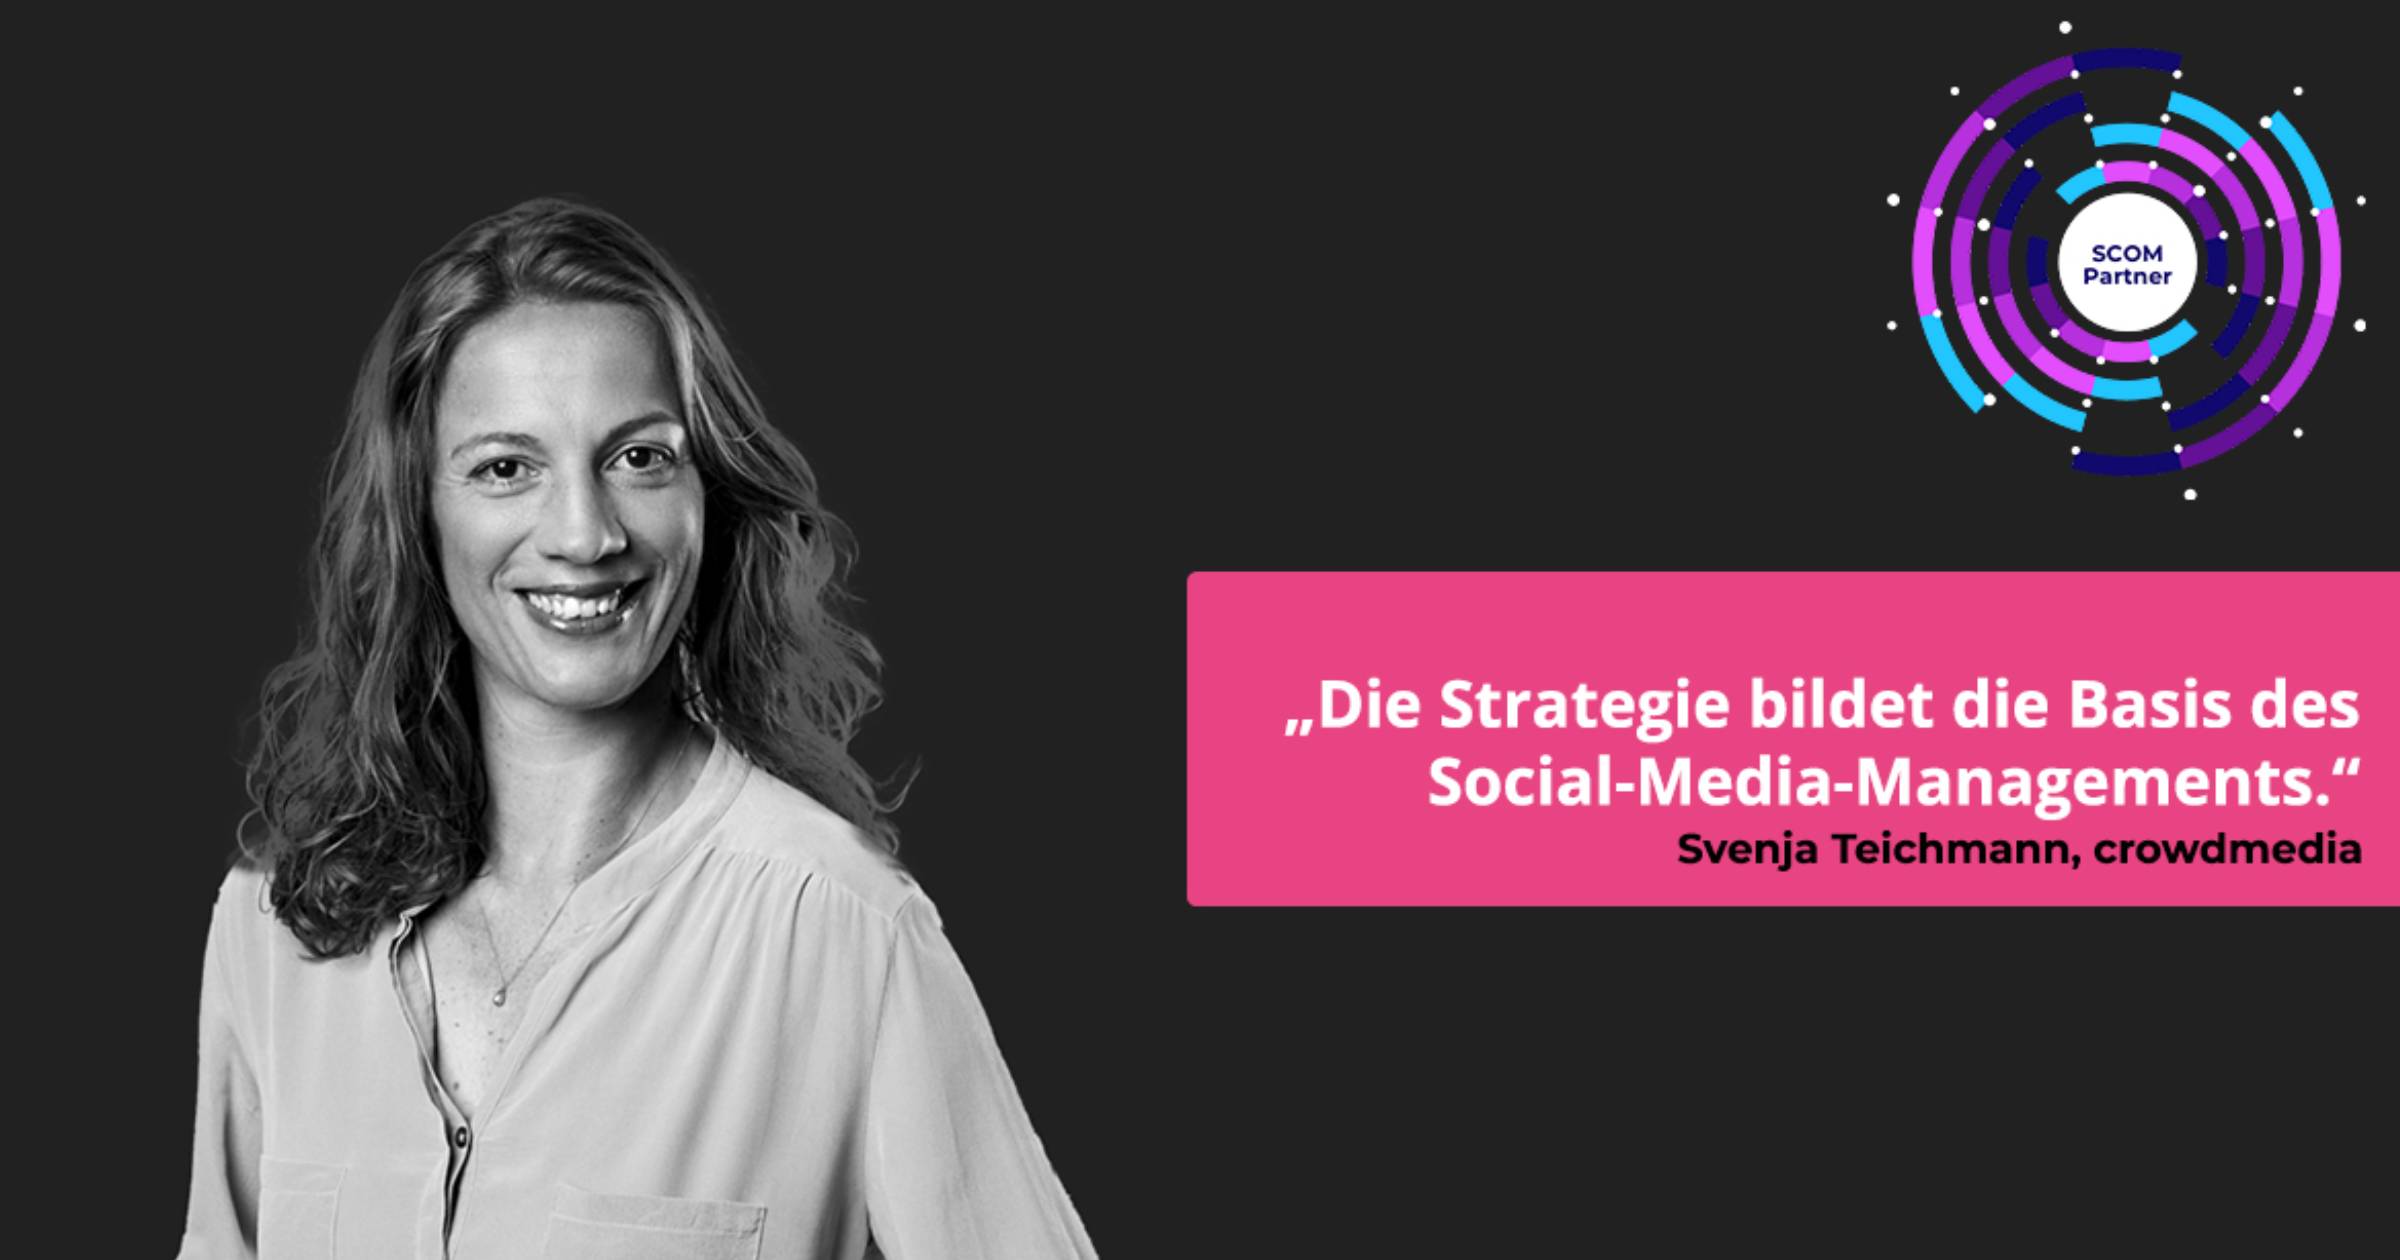 Interview mit Svenja Teichmann: Die Strategie bildet die Basis des Social-Media-Managements